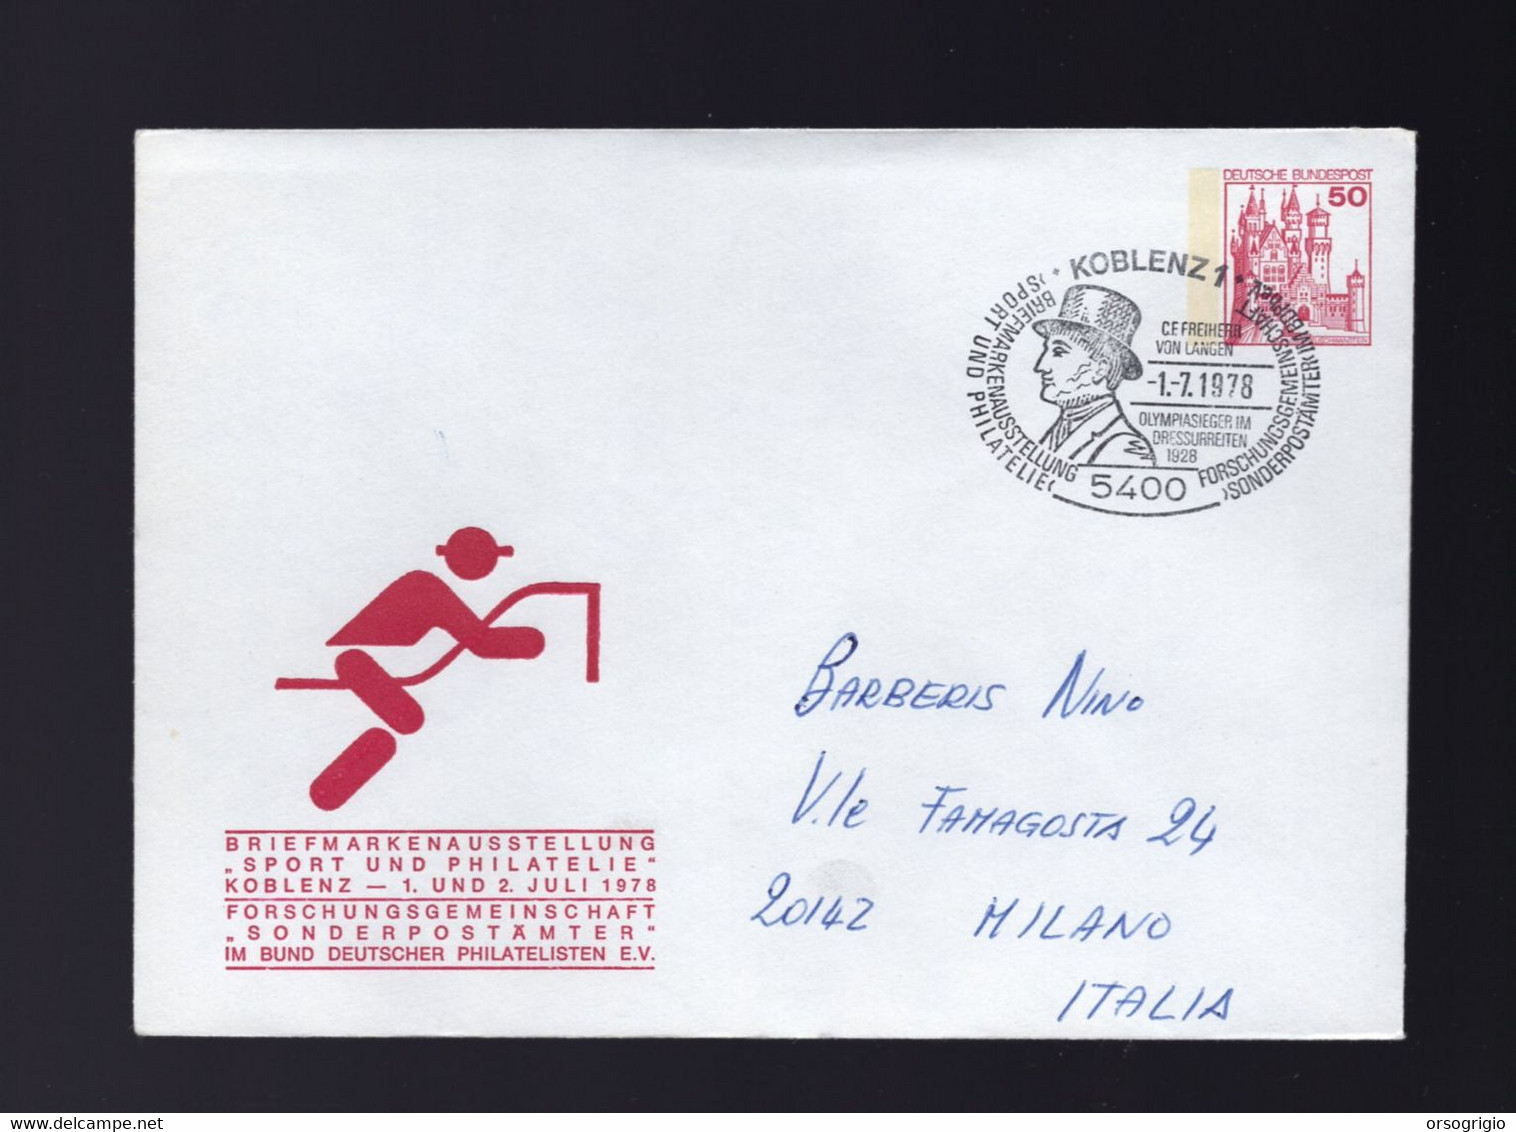 GERMANIA - C. F. FREIHERR VON LANGEN - OLYMPIASIEGER Im DRESSURREITEN - MEDAGLIA D'ORO EQUITAZIONE DRESSAGE - Sommer 1928: Amsterdam